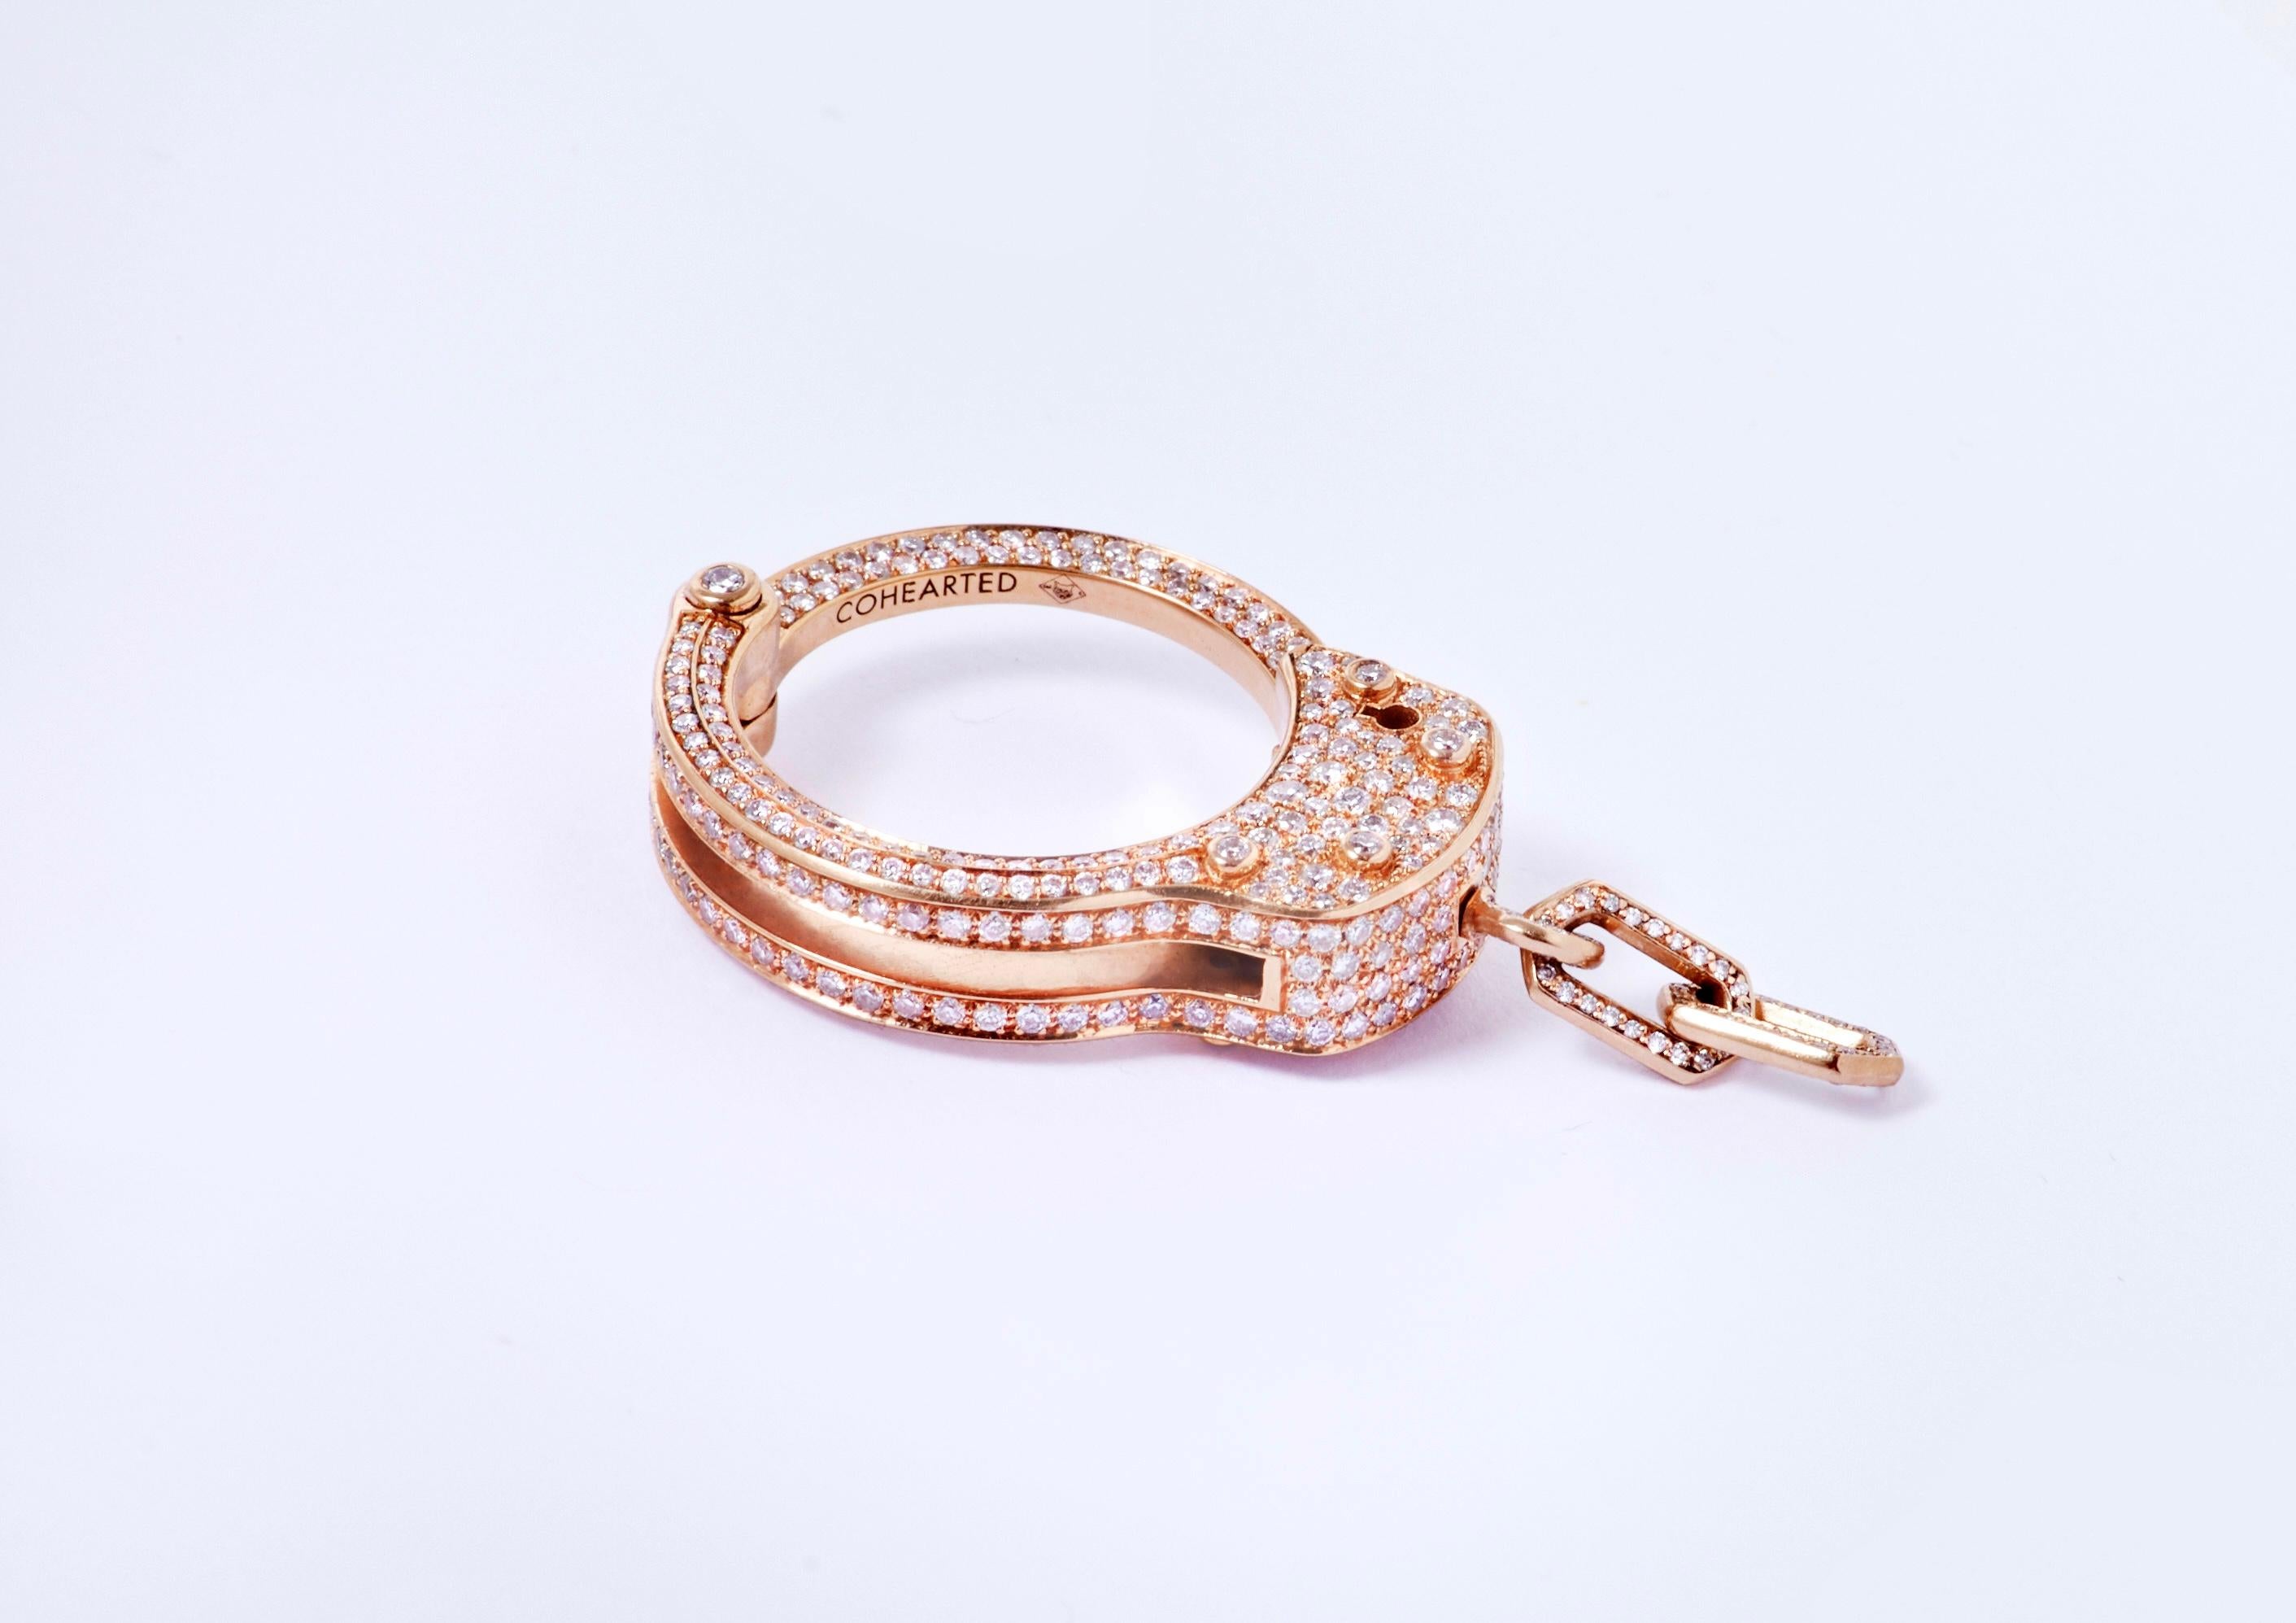 Dieser Ring Exemption Full aus 18 Karat Gelbgold, besetzt mit 471 Diamanten von insgesamt 2,61 Karat, ist ein Objekt, das Freiheit und Selbstbewusstsein symbolisiert.
Es ist das XL-Modell des Outflow-Rings.
Dieser Ring, der mit Gelbgold und